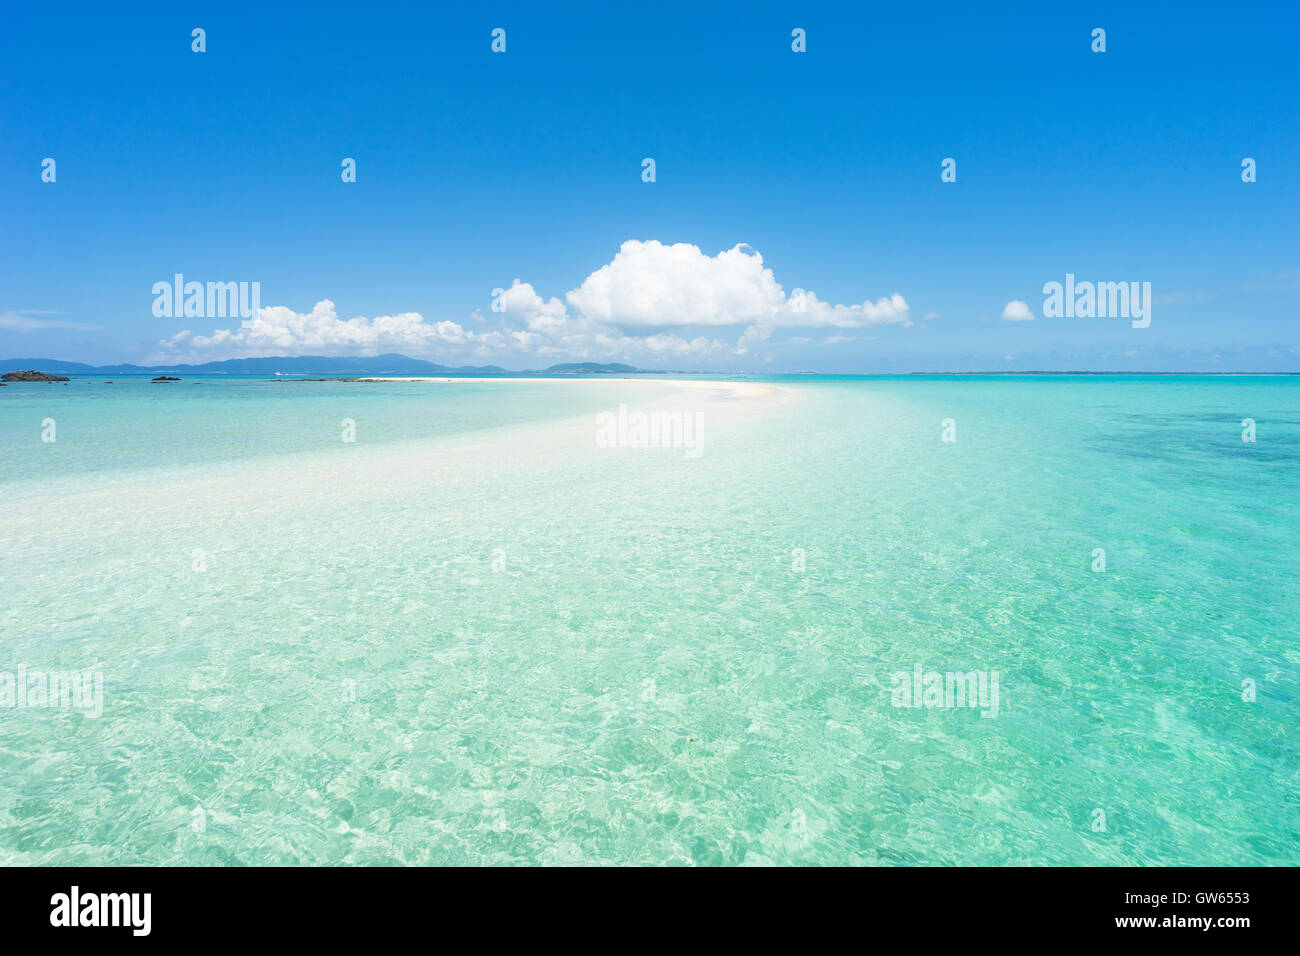 El paraíso tropical de la isla de Ishigaki Island, Grupo de Islas Yaeyama, Okinawa, Japón Foto de stock